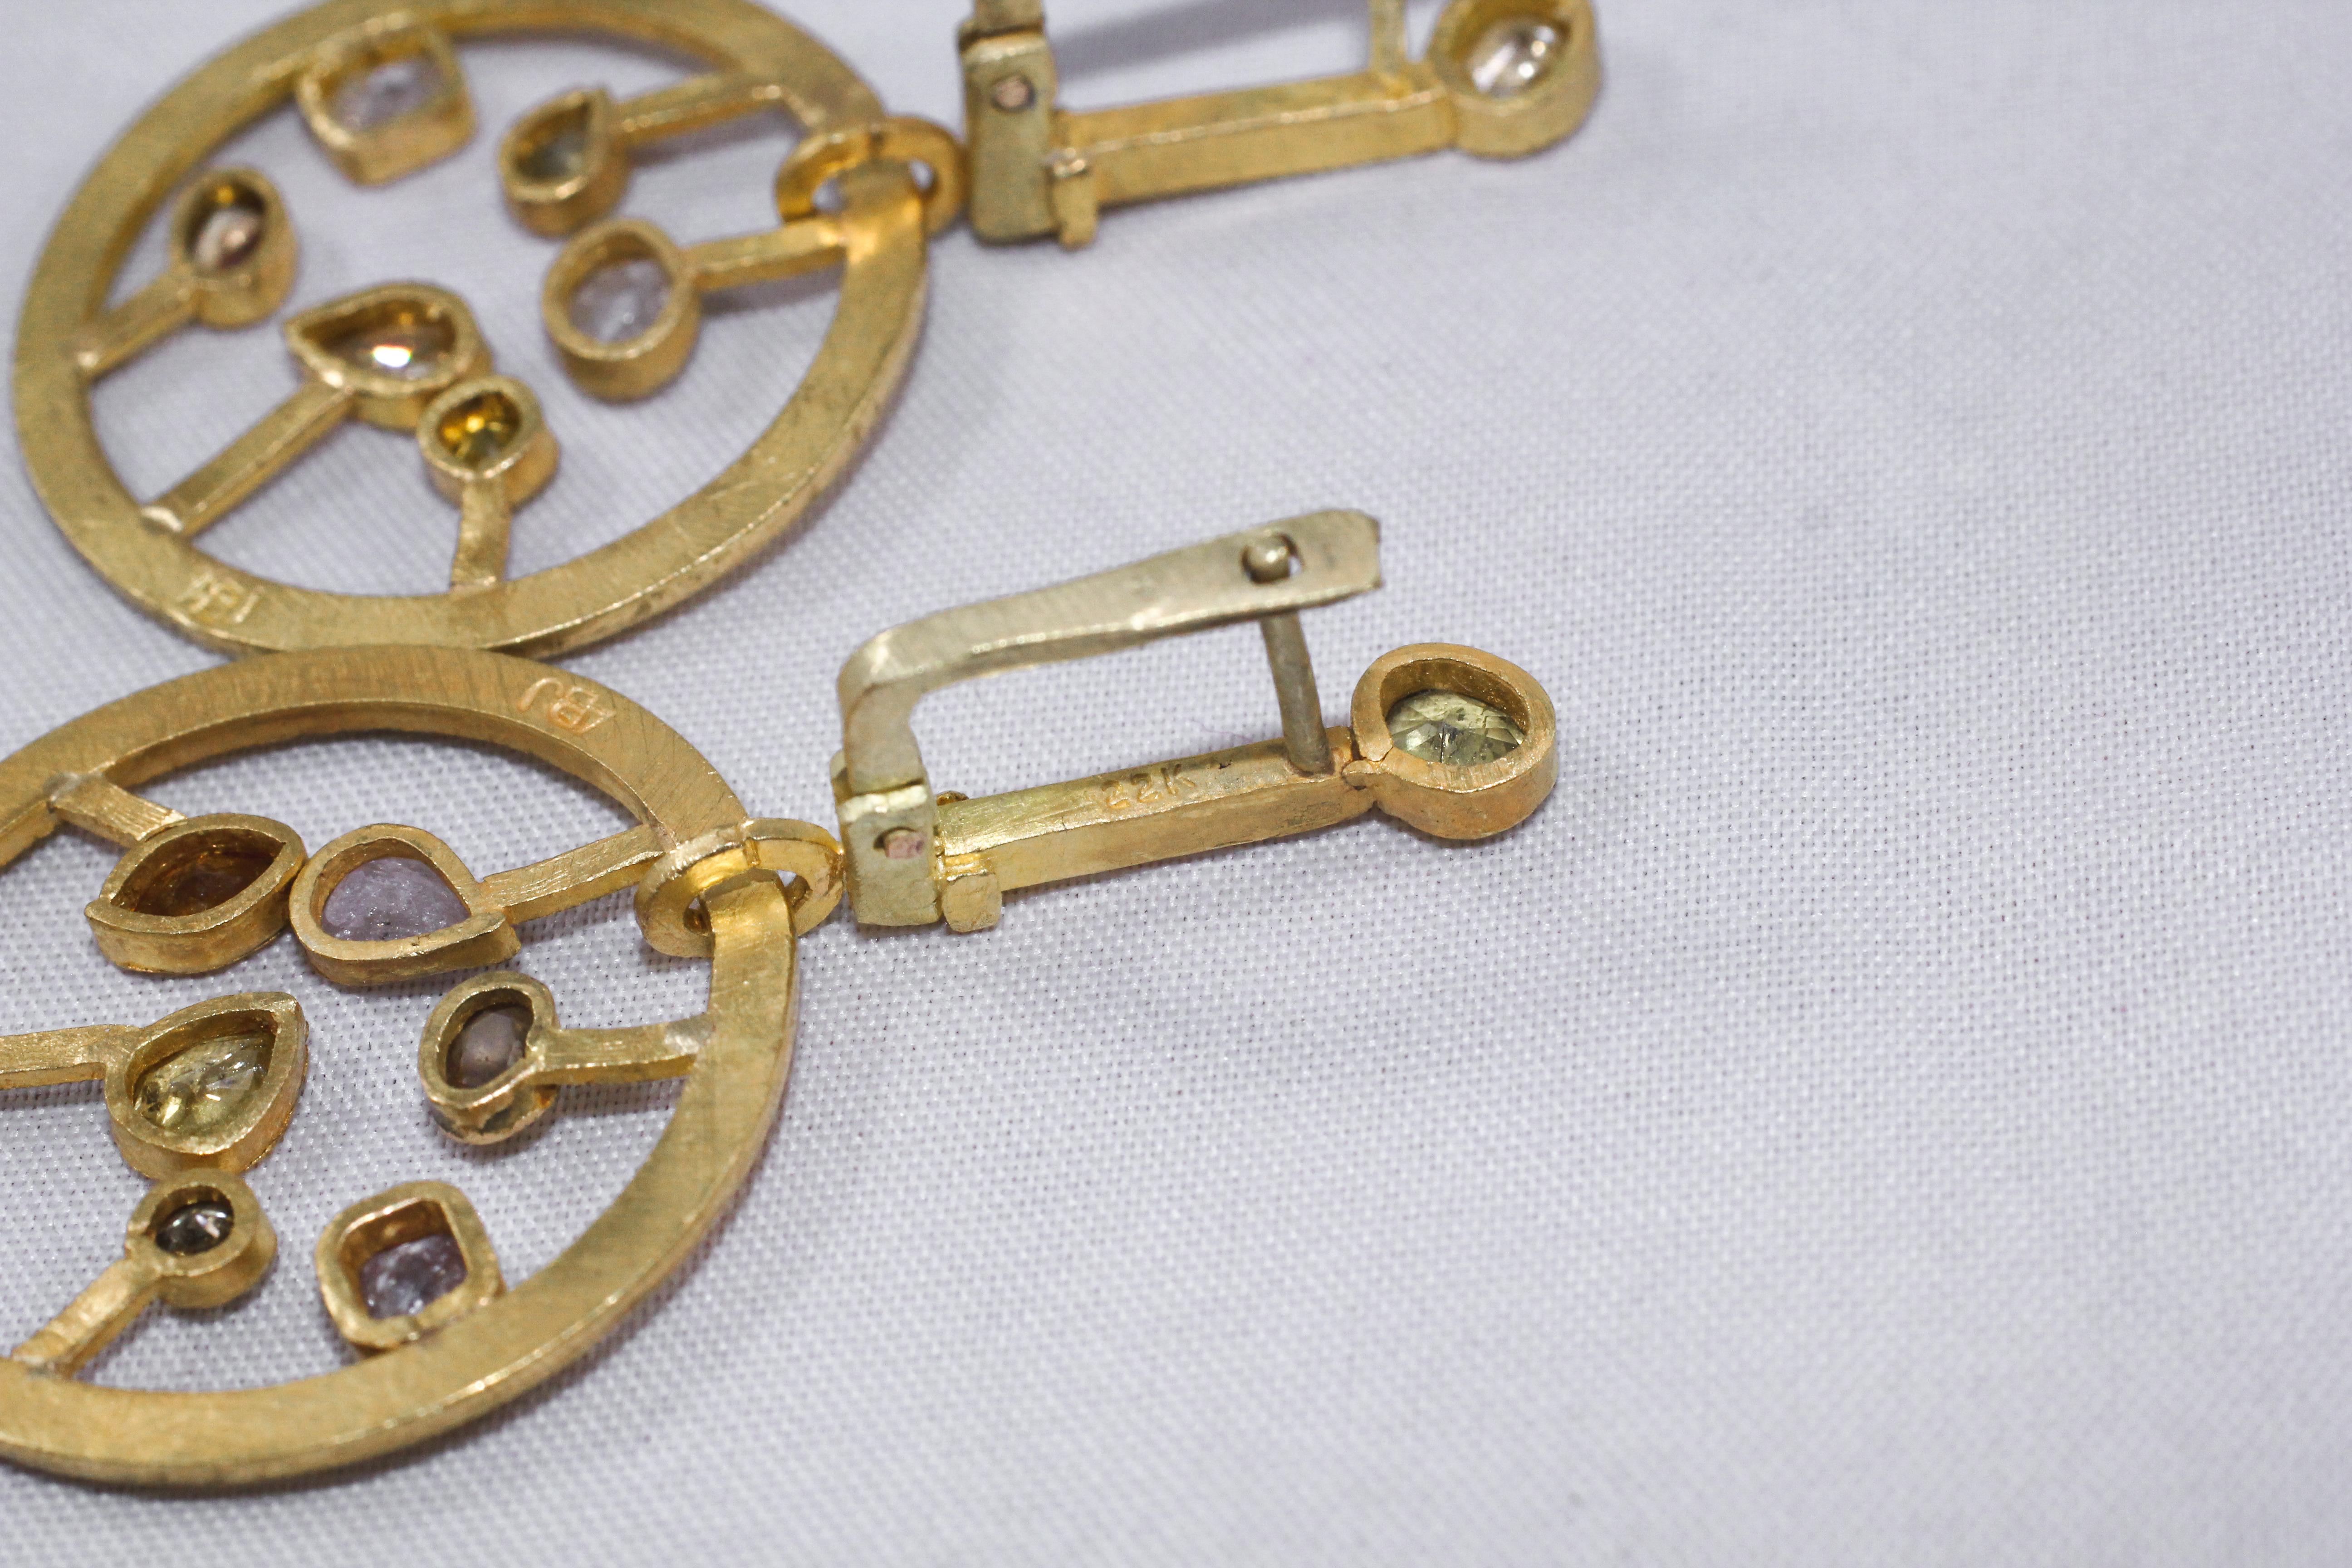 Fancy Color Diamonds 21-22k Gold Dangle Lever-Back Earrings Wedding Jewelry For Sale 2